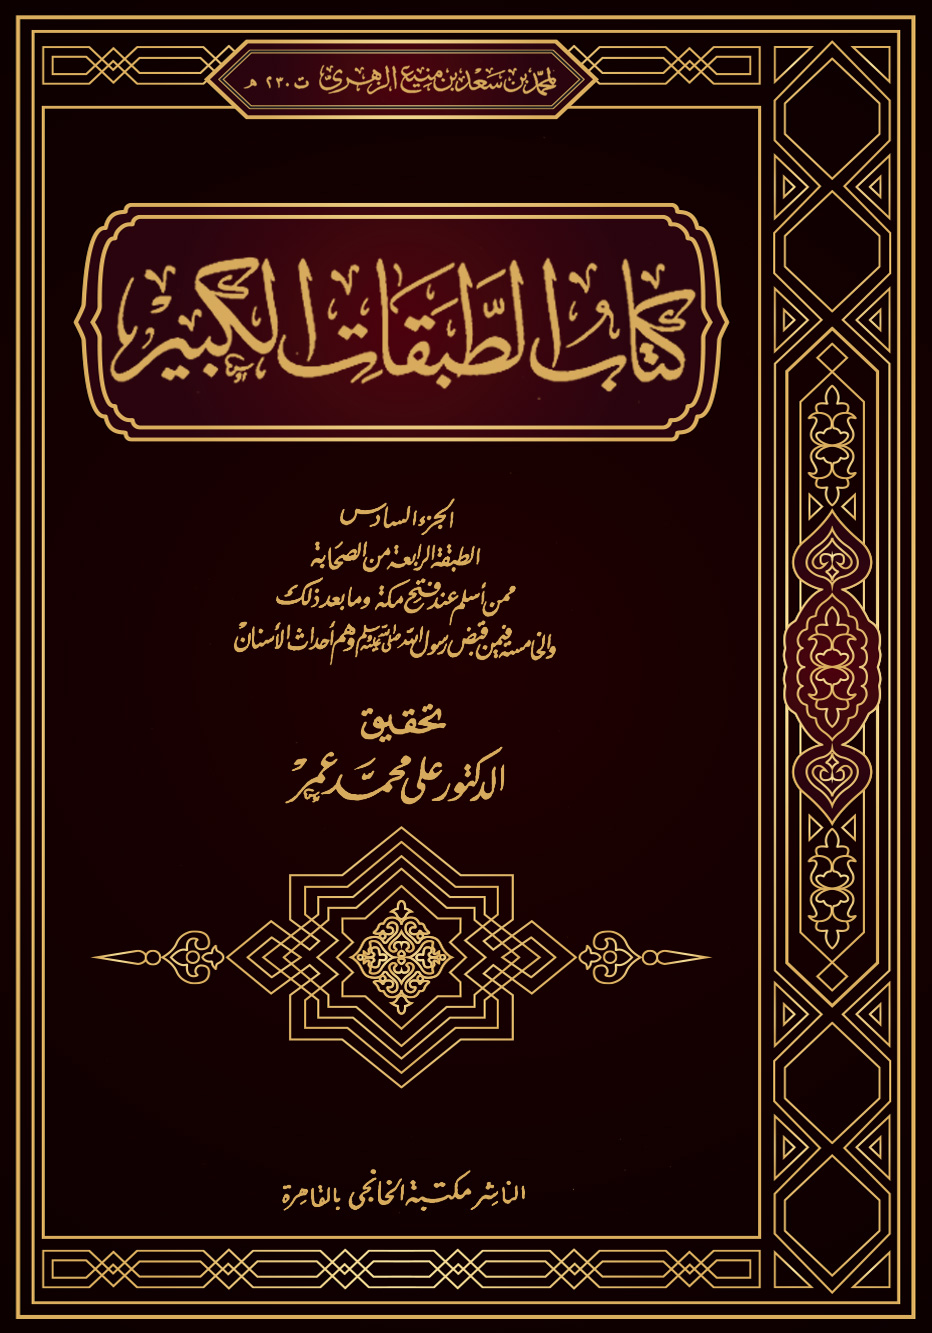 كتاب الطبقات الكبير (الجزء السادس: الطبقة الرابعة من الصحابة ممن أسلم عند فتح مكة)